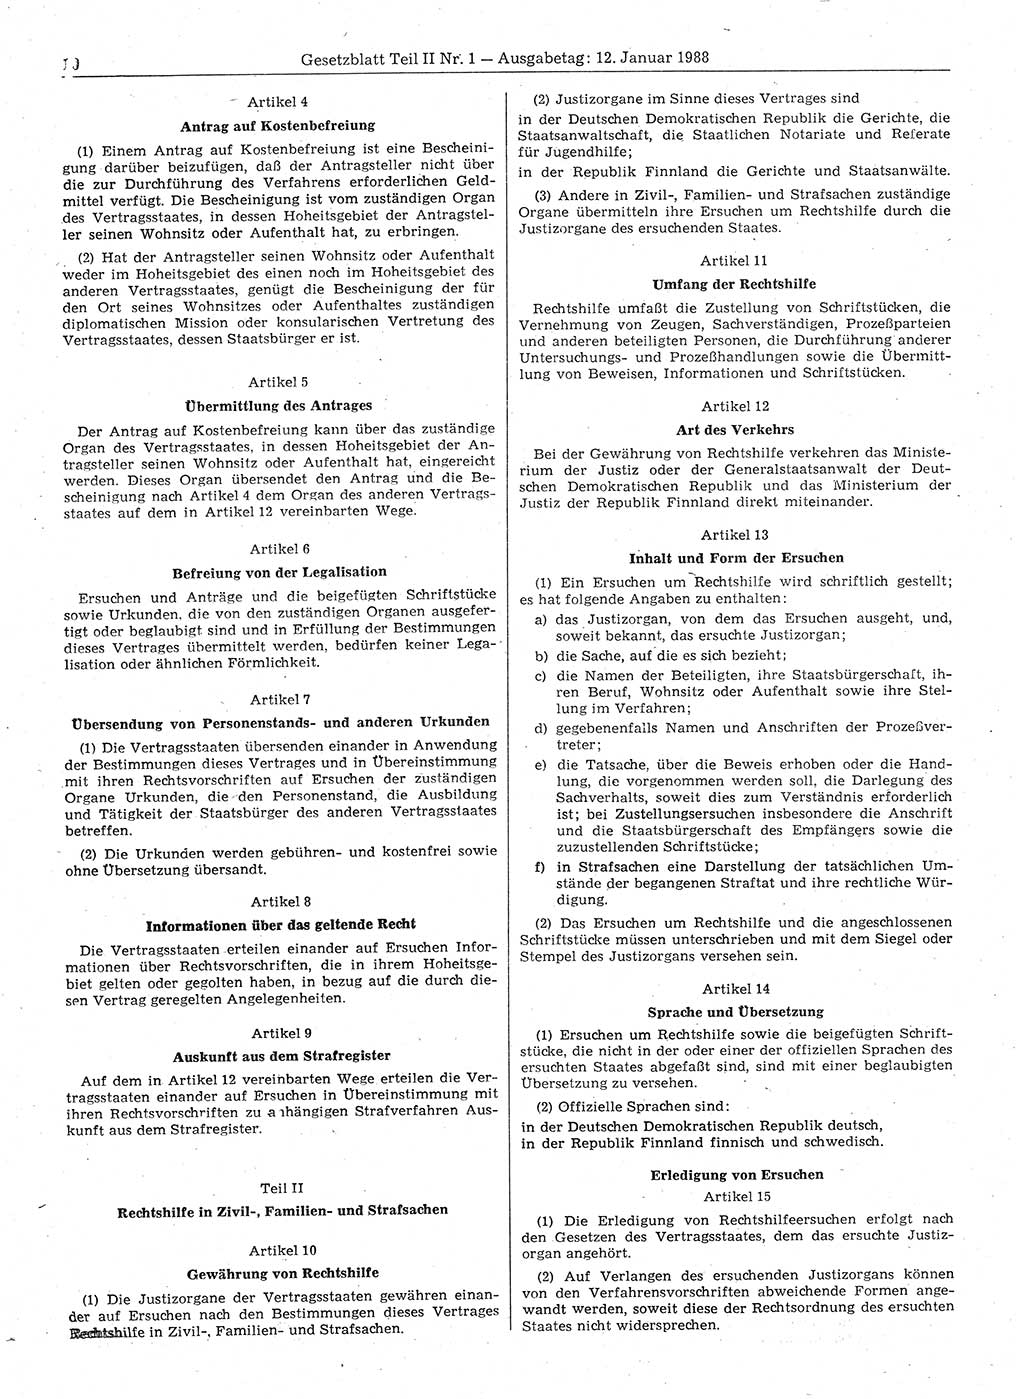 Gesetzblatt (GBl.) der Deutschen Demokratischen Republik (DDR) Teil ⅠⅠ 1988, Seite 10 (GBl. DDR ⅠⅠ 1988, S. 10)